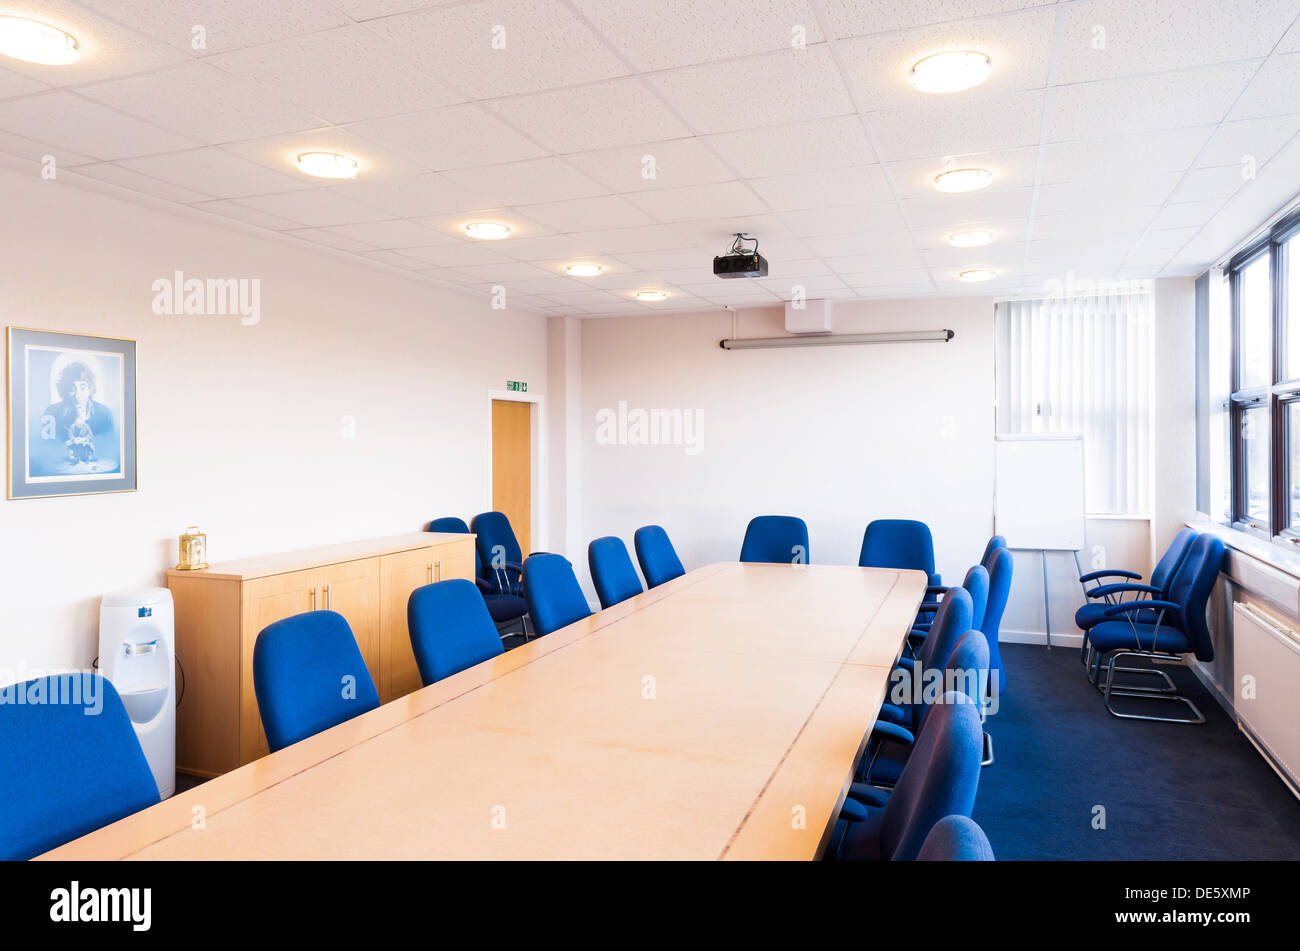 Ein typisches Sitzungssaal / Tagungsraum / Konferenzraum mit einer Wand montiert, Bildschirm und Deckenbeamer montiert. Stockfoto